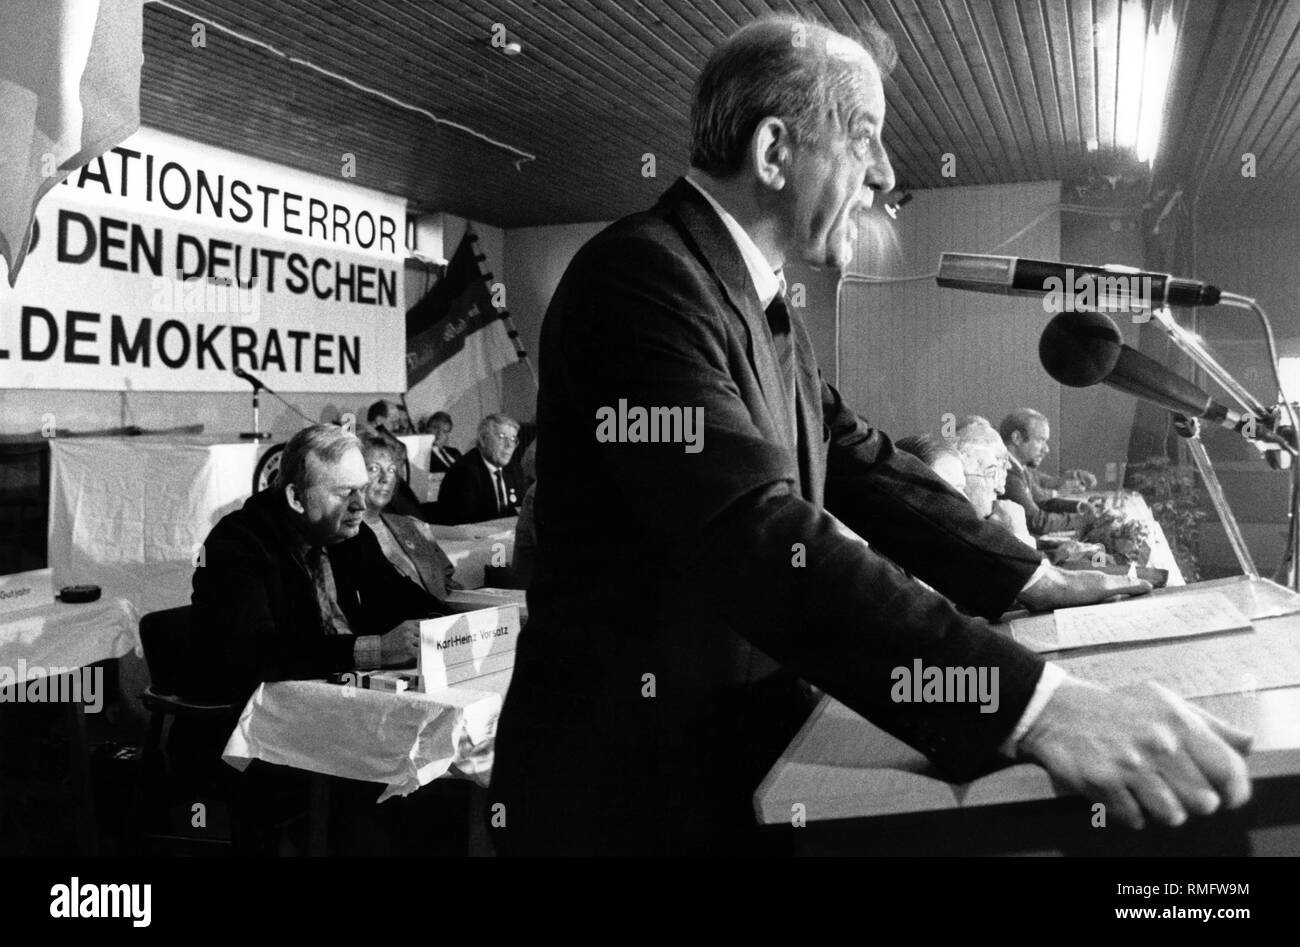 Il presidente dell'NPD, Martin Mussgnug, parla al congresso del partito nazionale l'NPD. Sullo sfondo si blocca un banner che recita: "l'integrazione il terrore della Germania, il tedesco democratici nazionali'. Foto Stock